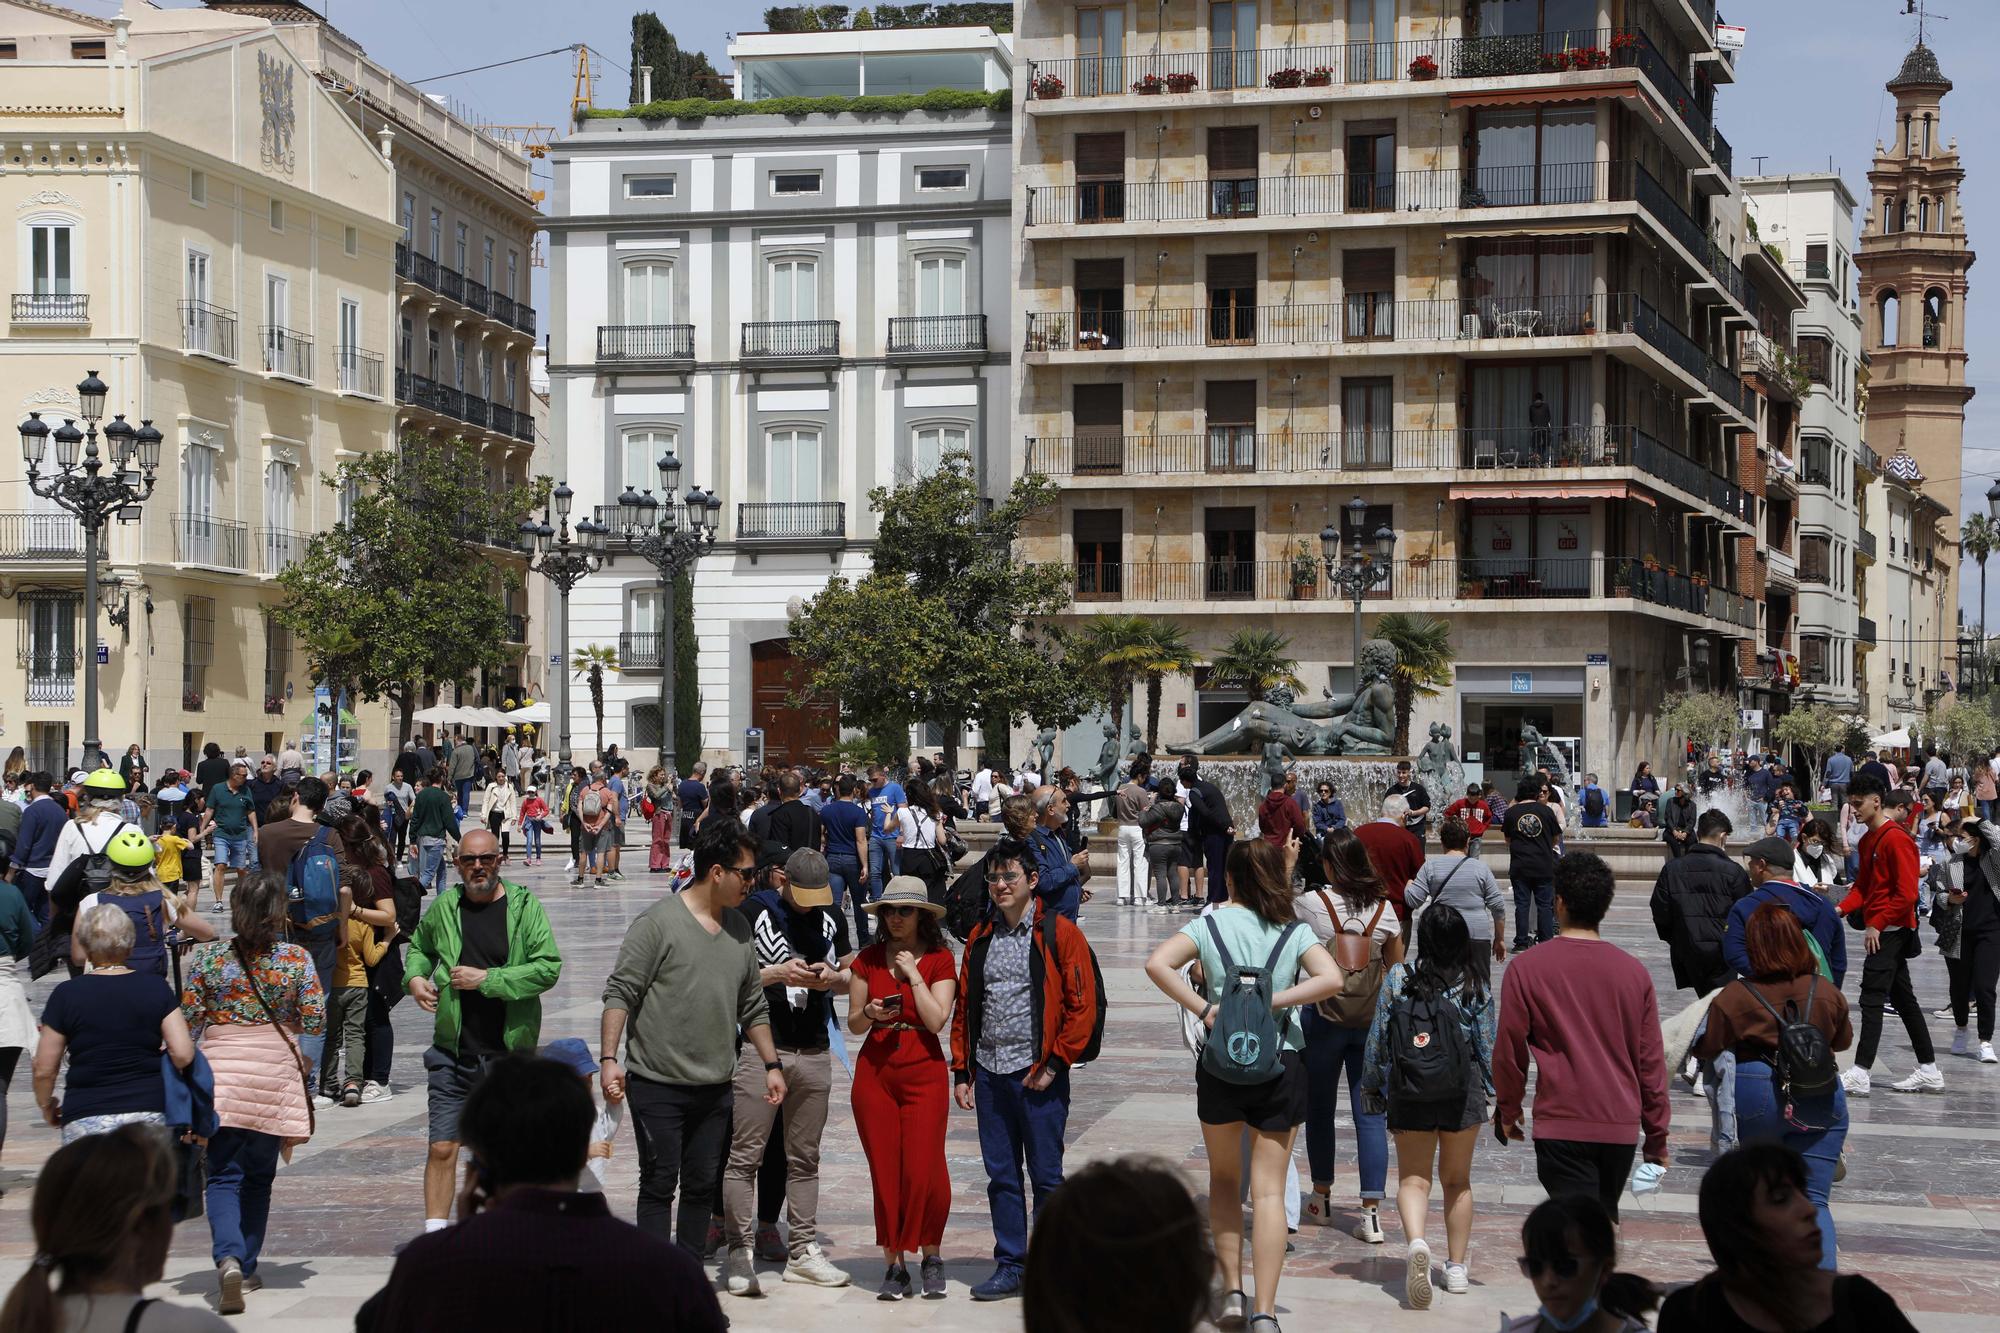 El buen tiempo y las vacaciones sacan a la gente a las calles de València